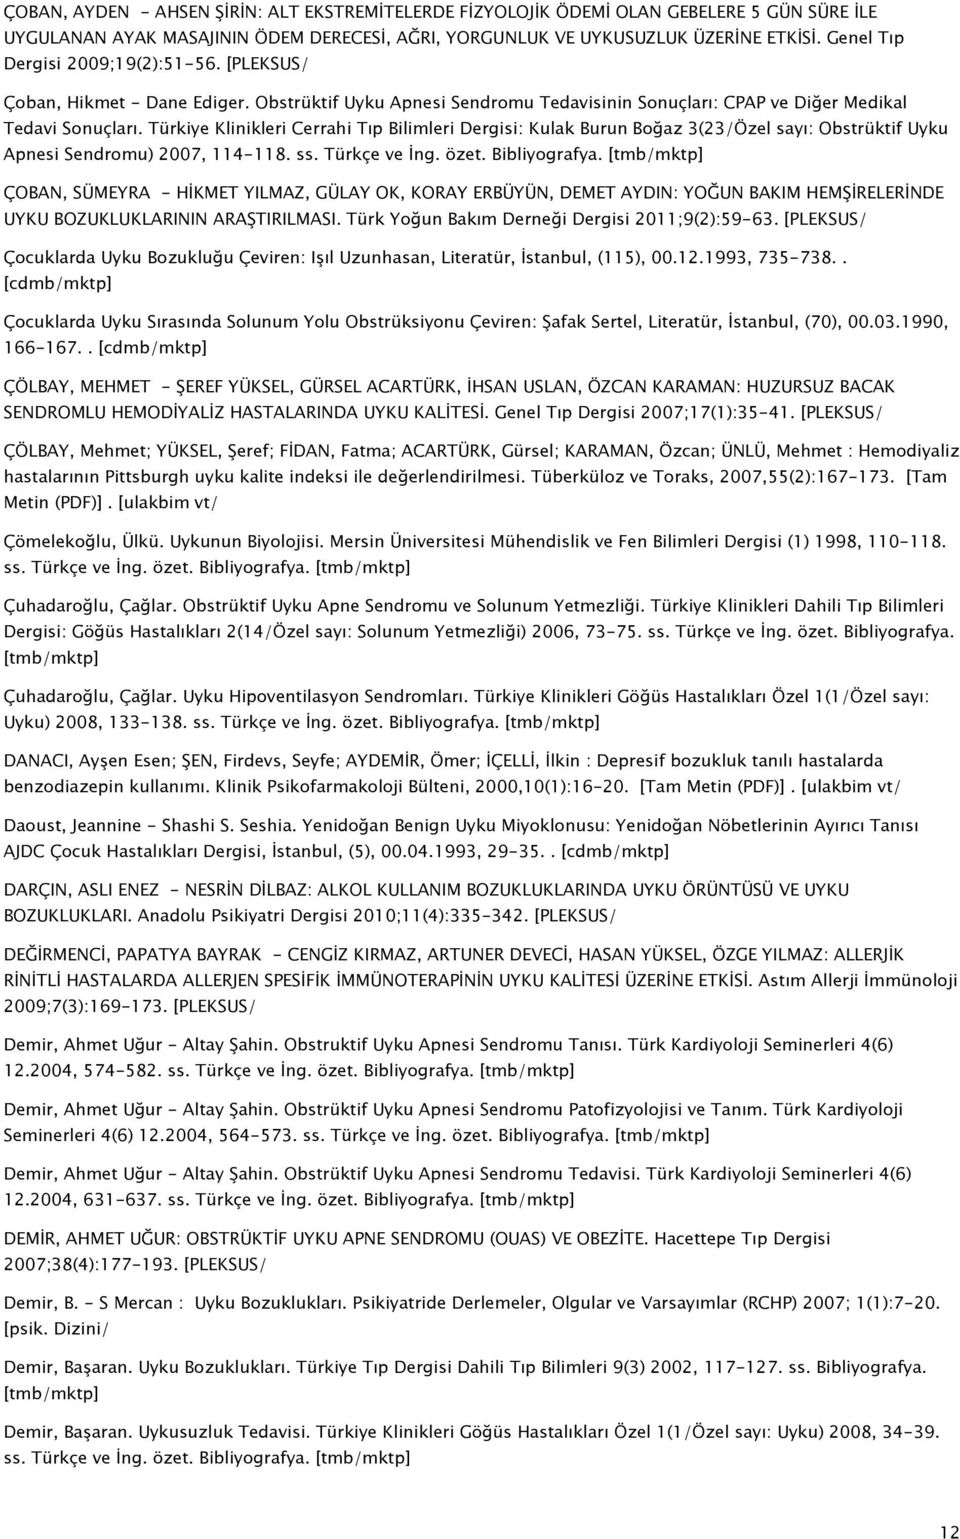 Türkiye Klinikleri Cerrahi Tıp Bilimleri Dergisi: Kulak Burun Boğaz 3(23/Özel sayı: Obstrüktif Uyku Apnesi Sendromu) 2007, 114-118. ss. Türkçe ve İng. özet. Bibliyografya.